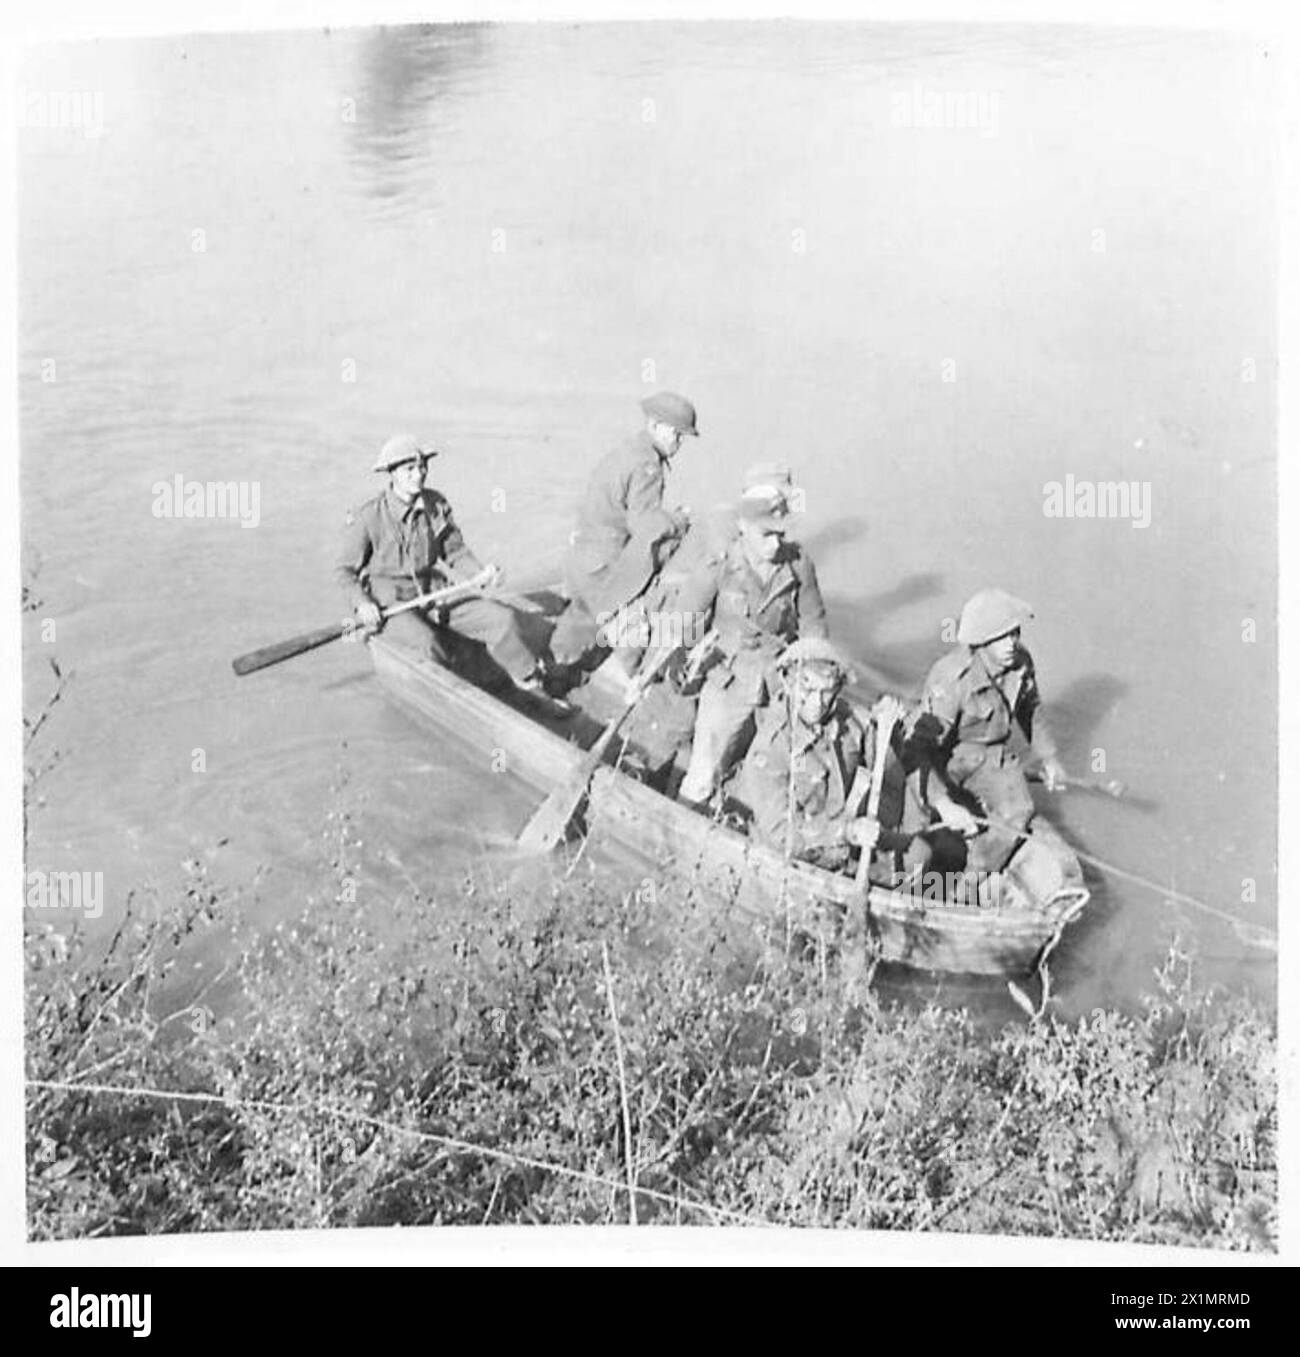 DIE FÜNFTE ARMEE ÜBERQUERT DEN FLUSS VOLTURNO und paddelt ihr eigenes Kanu. Erste deutsche Gefangene helfen, sich zum Südufer des Flusses zu bringen, wo sie verhört wurden, die britische Armee Stockfoto